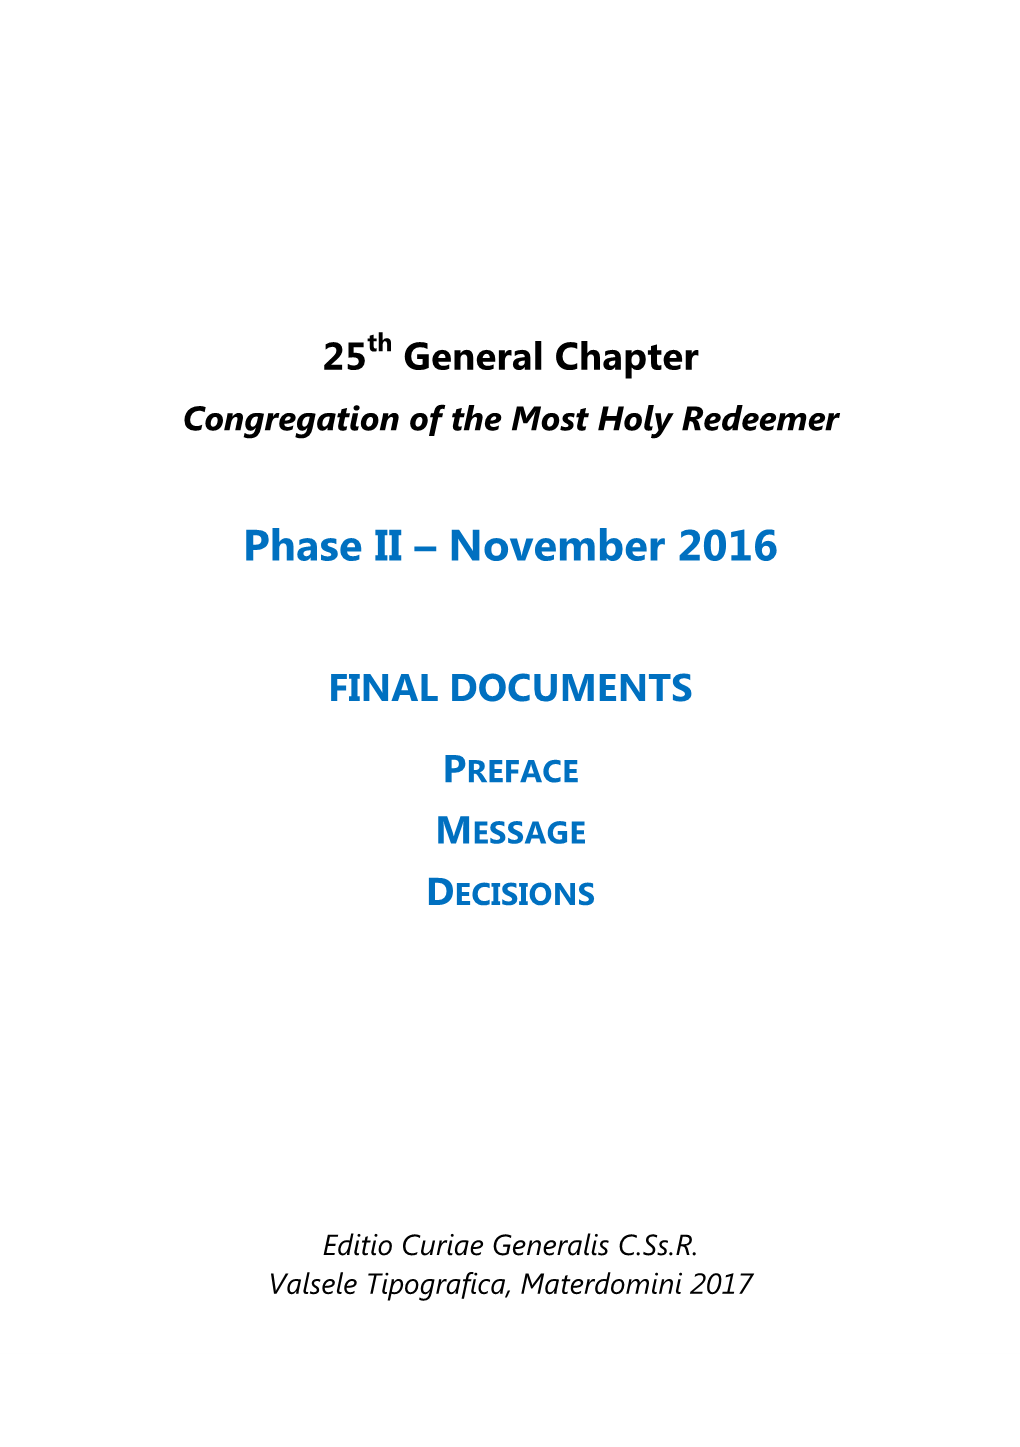 Phase II – November 2016